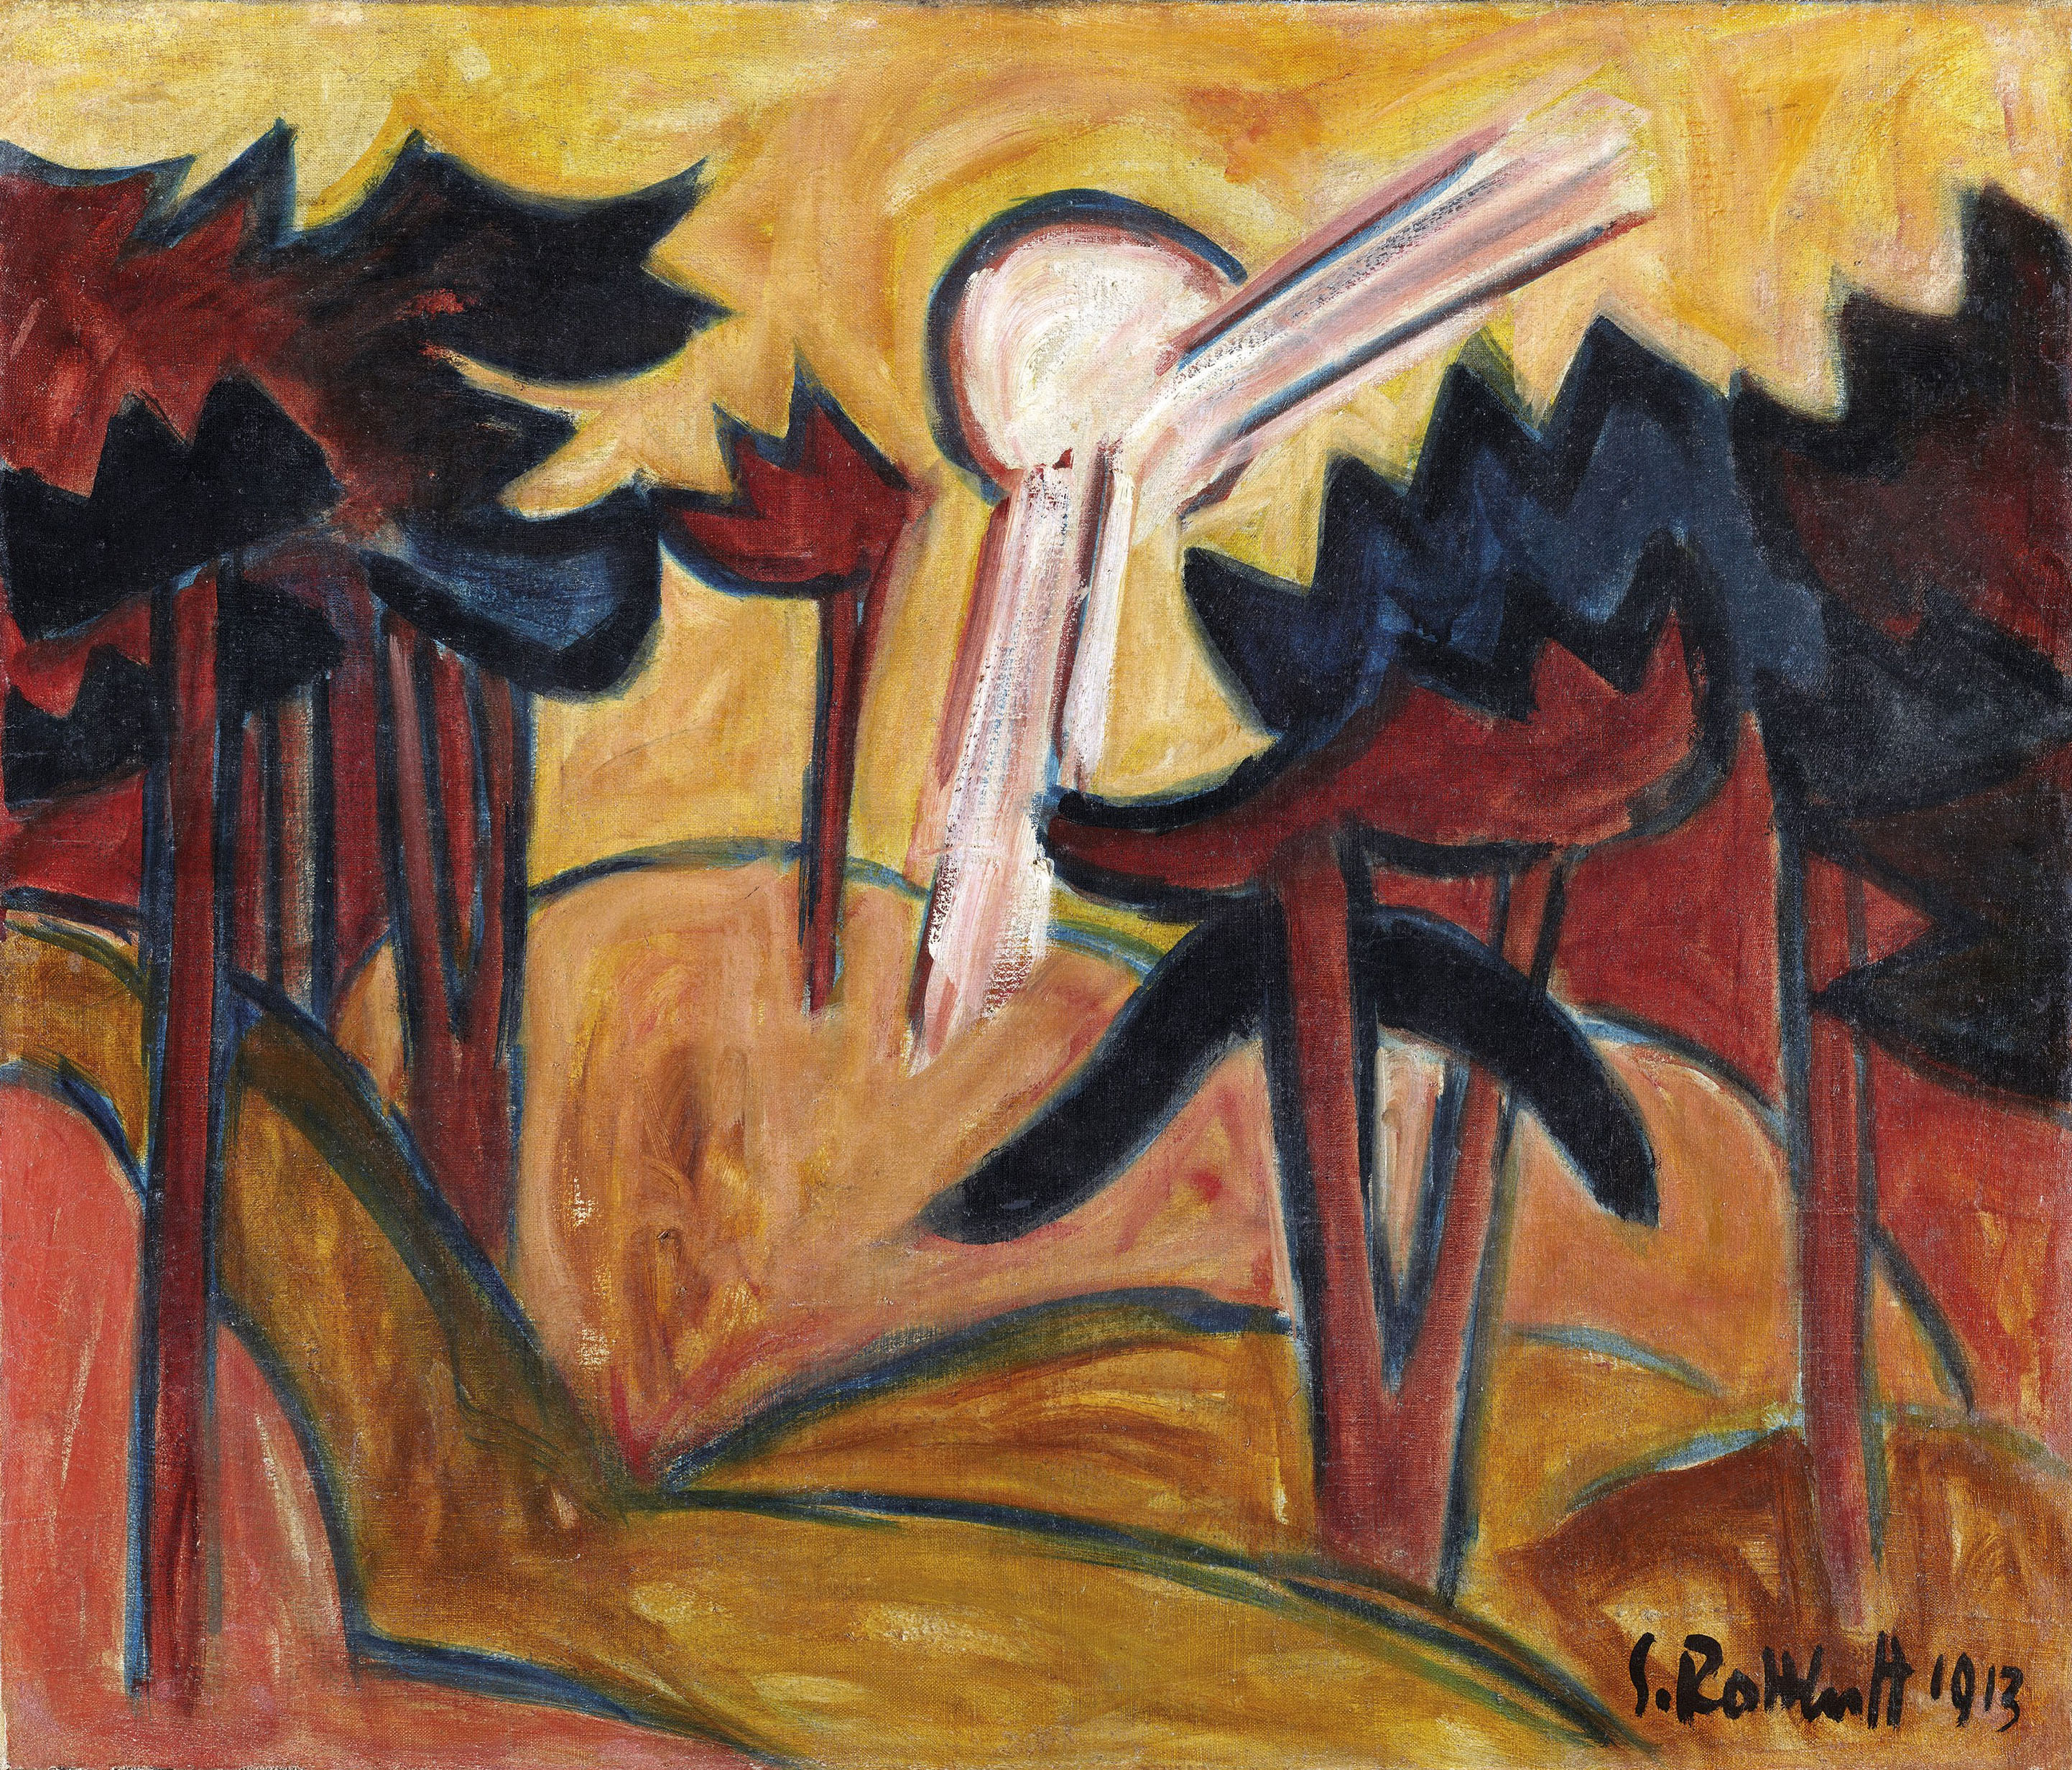 카를 슈미트 로틀루프(Karl Schmidt Rottluff), 독일, 미술가, 1884-1976